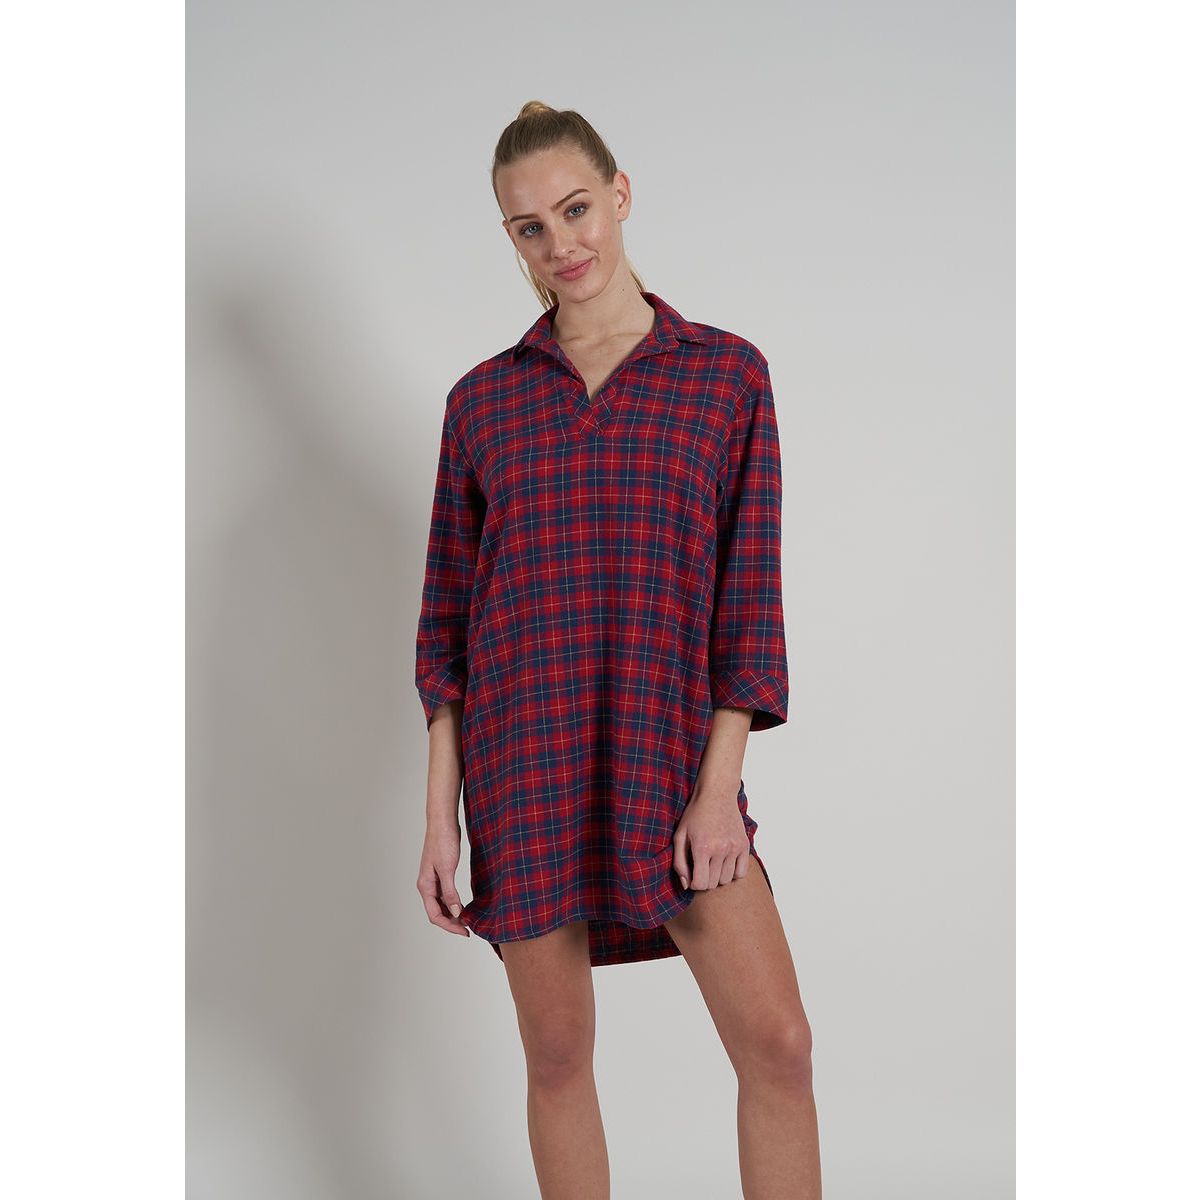 Flanellen dames nachthemd Tom Tailor | Gratis verzending vanaf € 40,- |  Gratis retour | Snel in huis | Online de mooiste pyjama's, nachthemden,  ondermode en meer